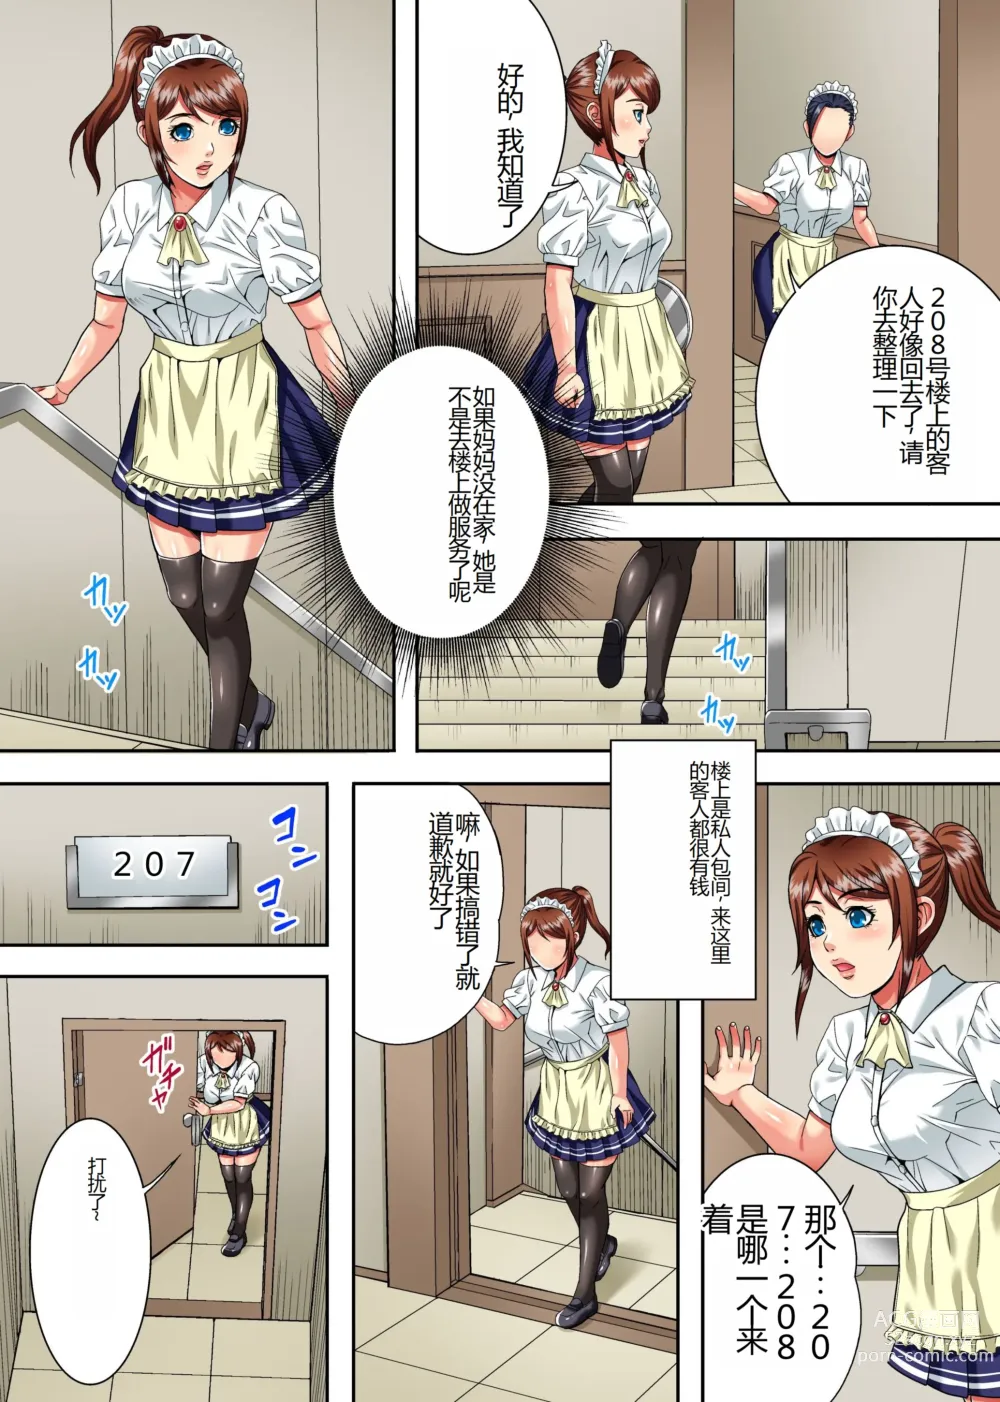 Page 4 of doujinshi Mama wa Ano Hito no Nama Onaho ~Hachi-nenkan Jikkuri to Shikonda Jukujo Ana to Pichipichi Shojo Ana no Gokujo Oyakodon~